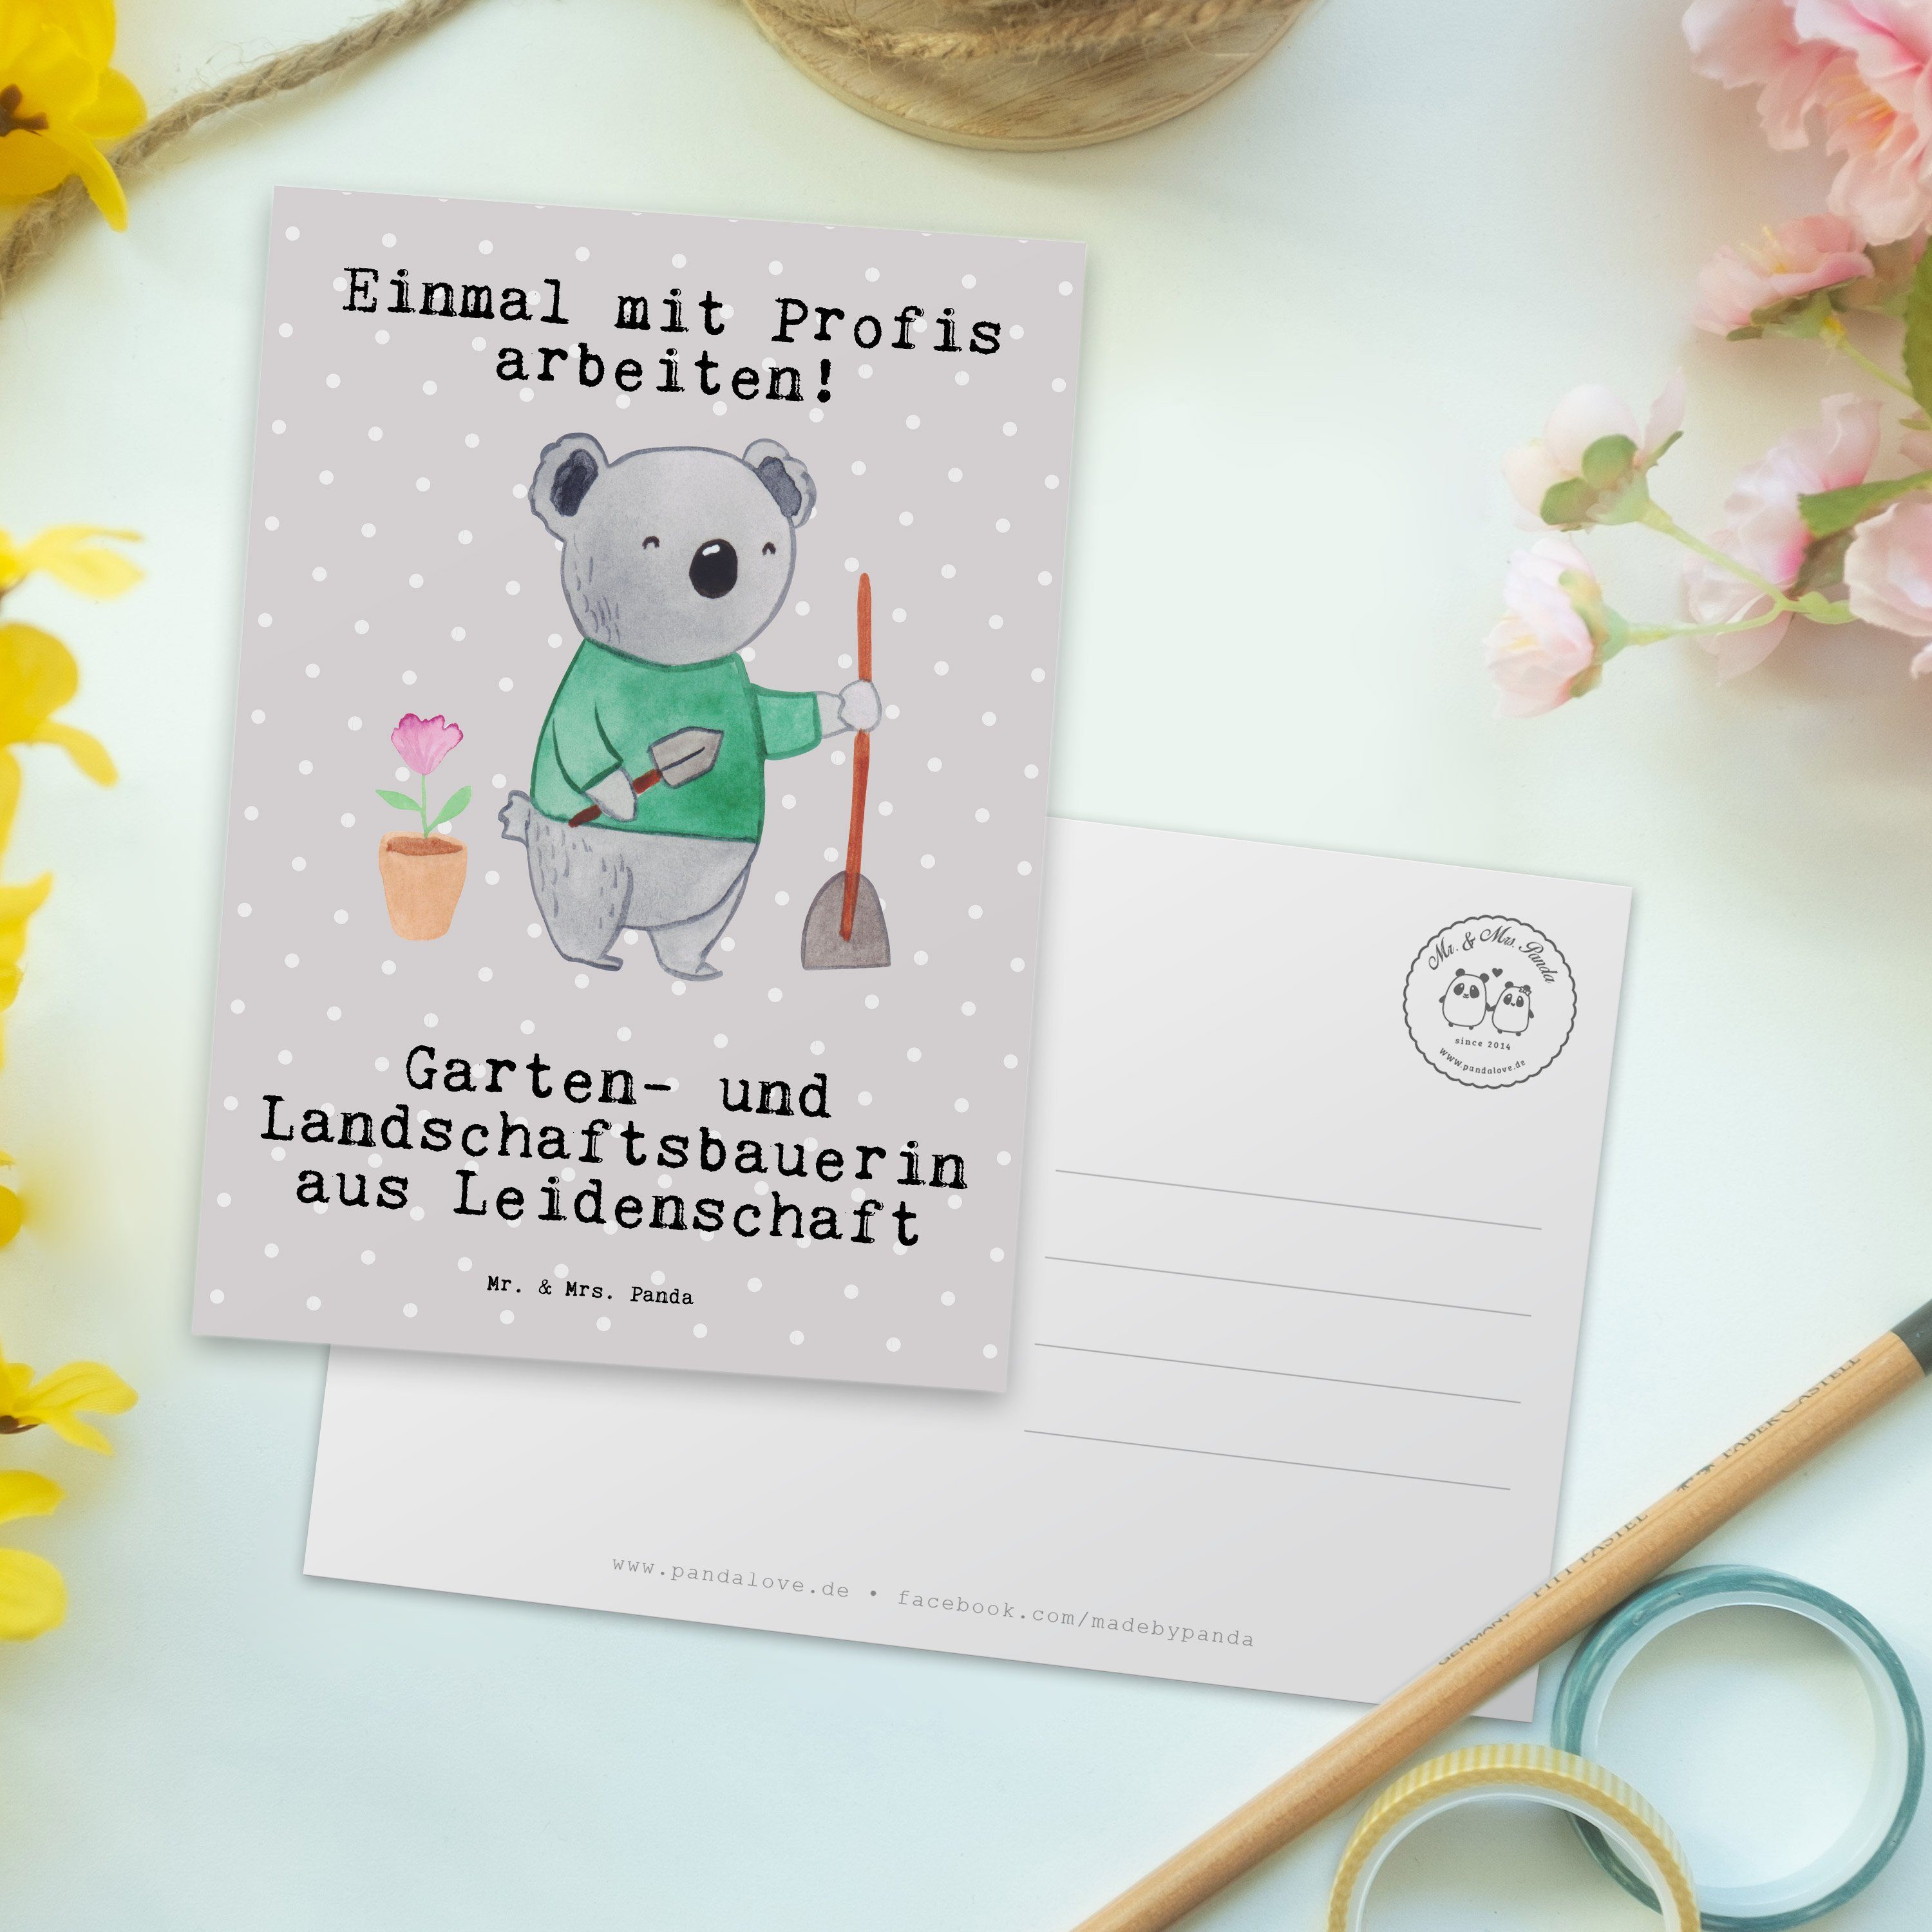 Pastell aus und & Mrs. Mr. Panda Landschaftsbauerin - Grau - Garten- Gesc Leidenschaft Postkarte